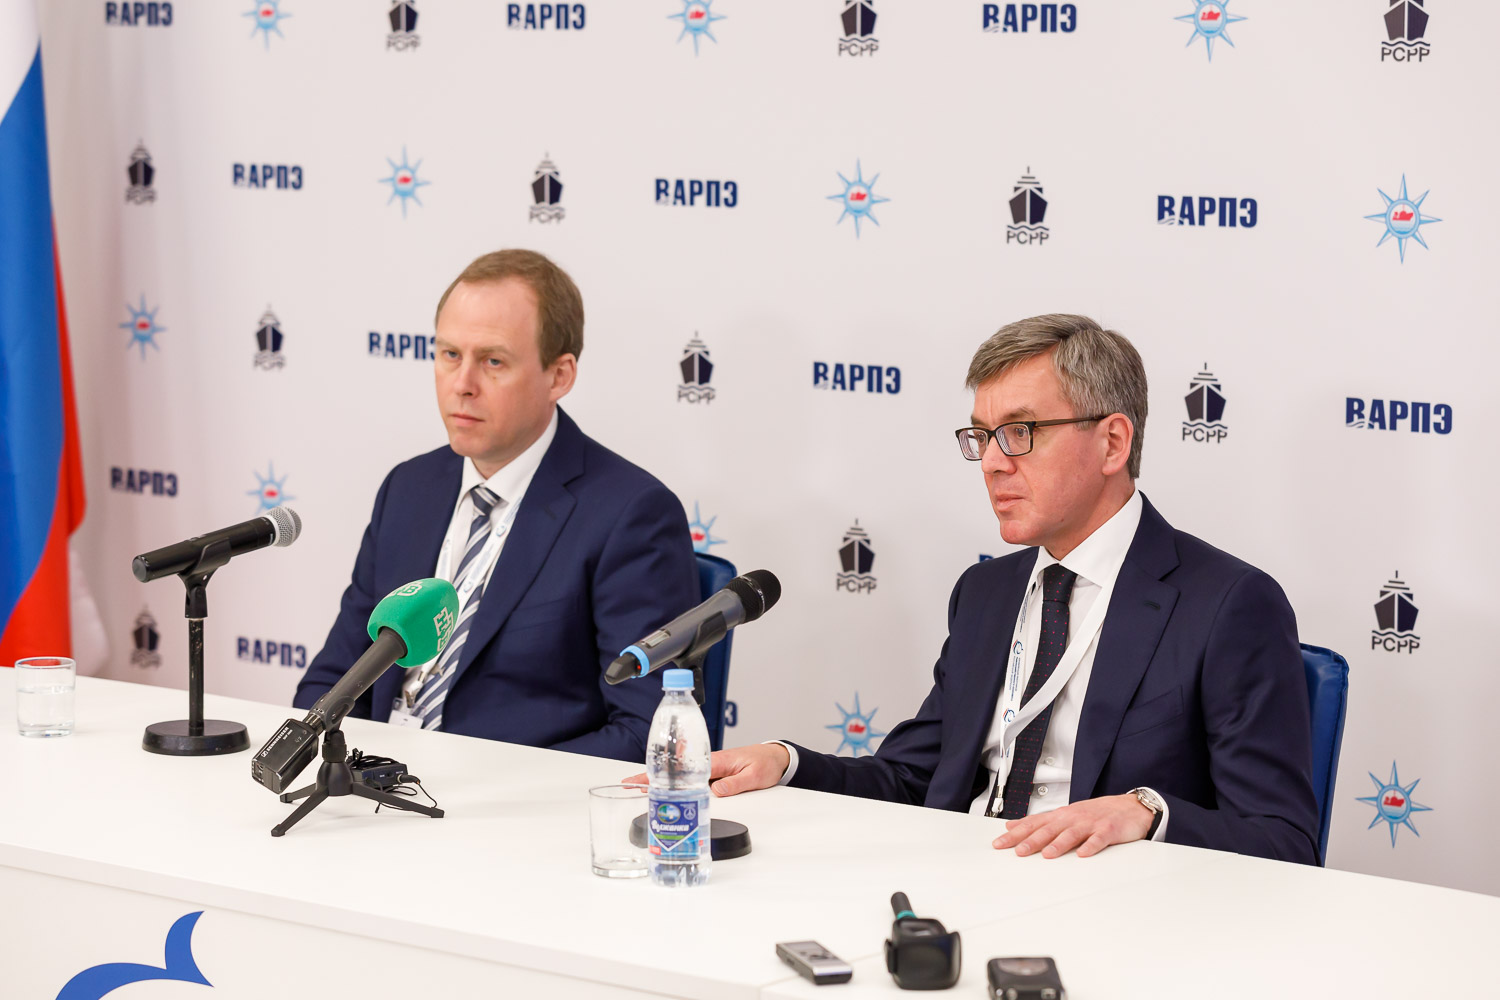 Василий Соколов (слева) и Герман Зверев (справа) на пресс-конференции пресс-служба ВАРПЭ